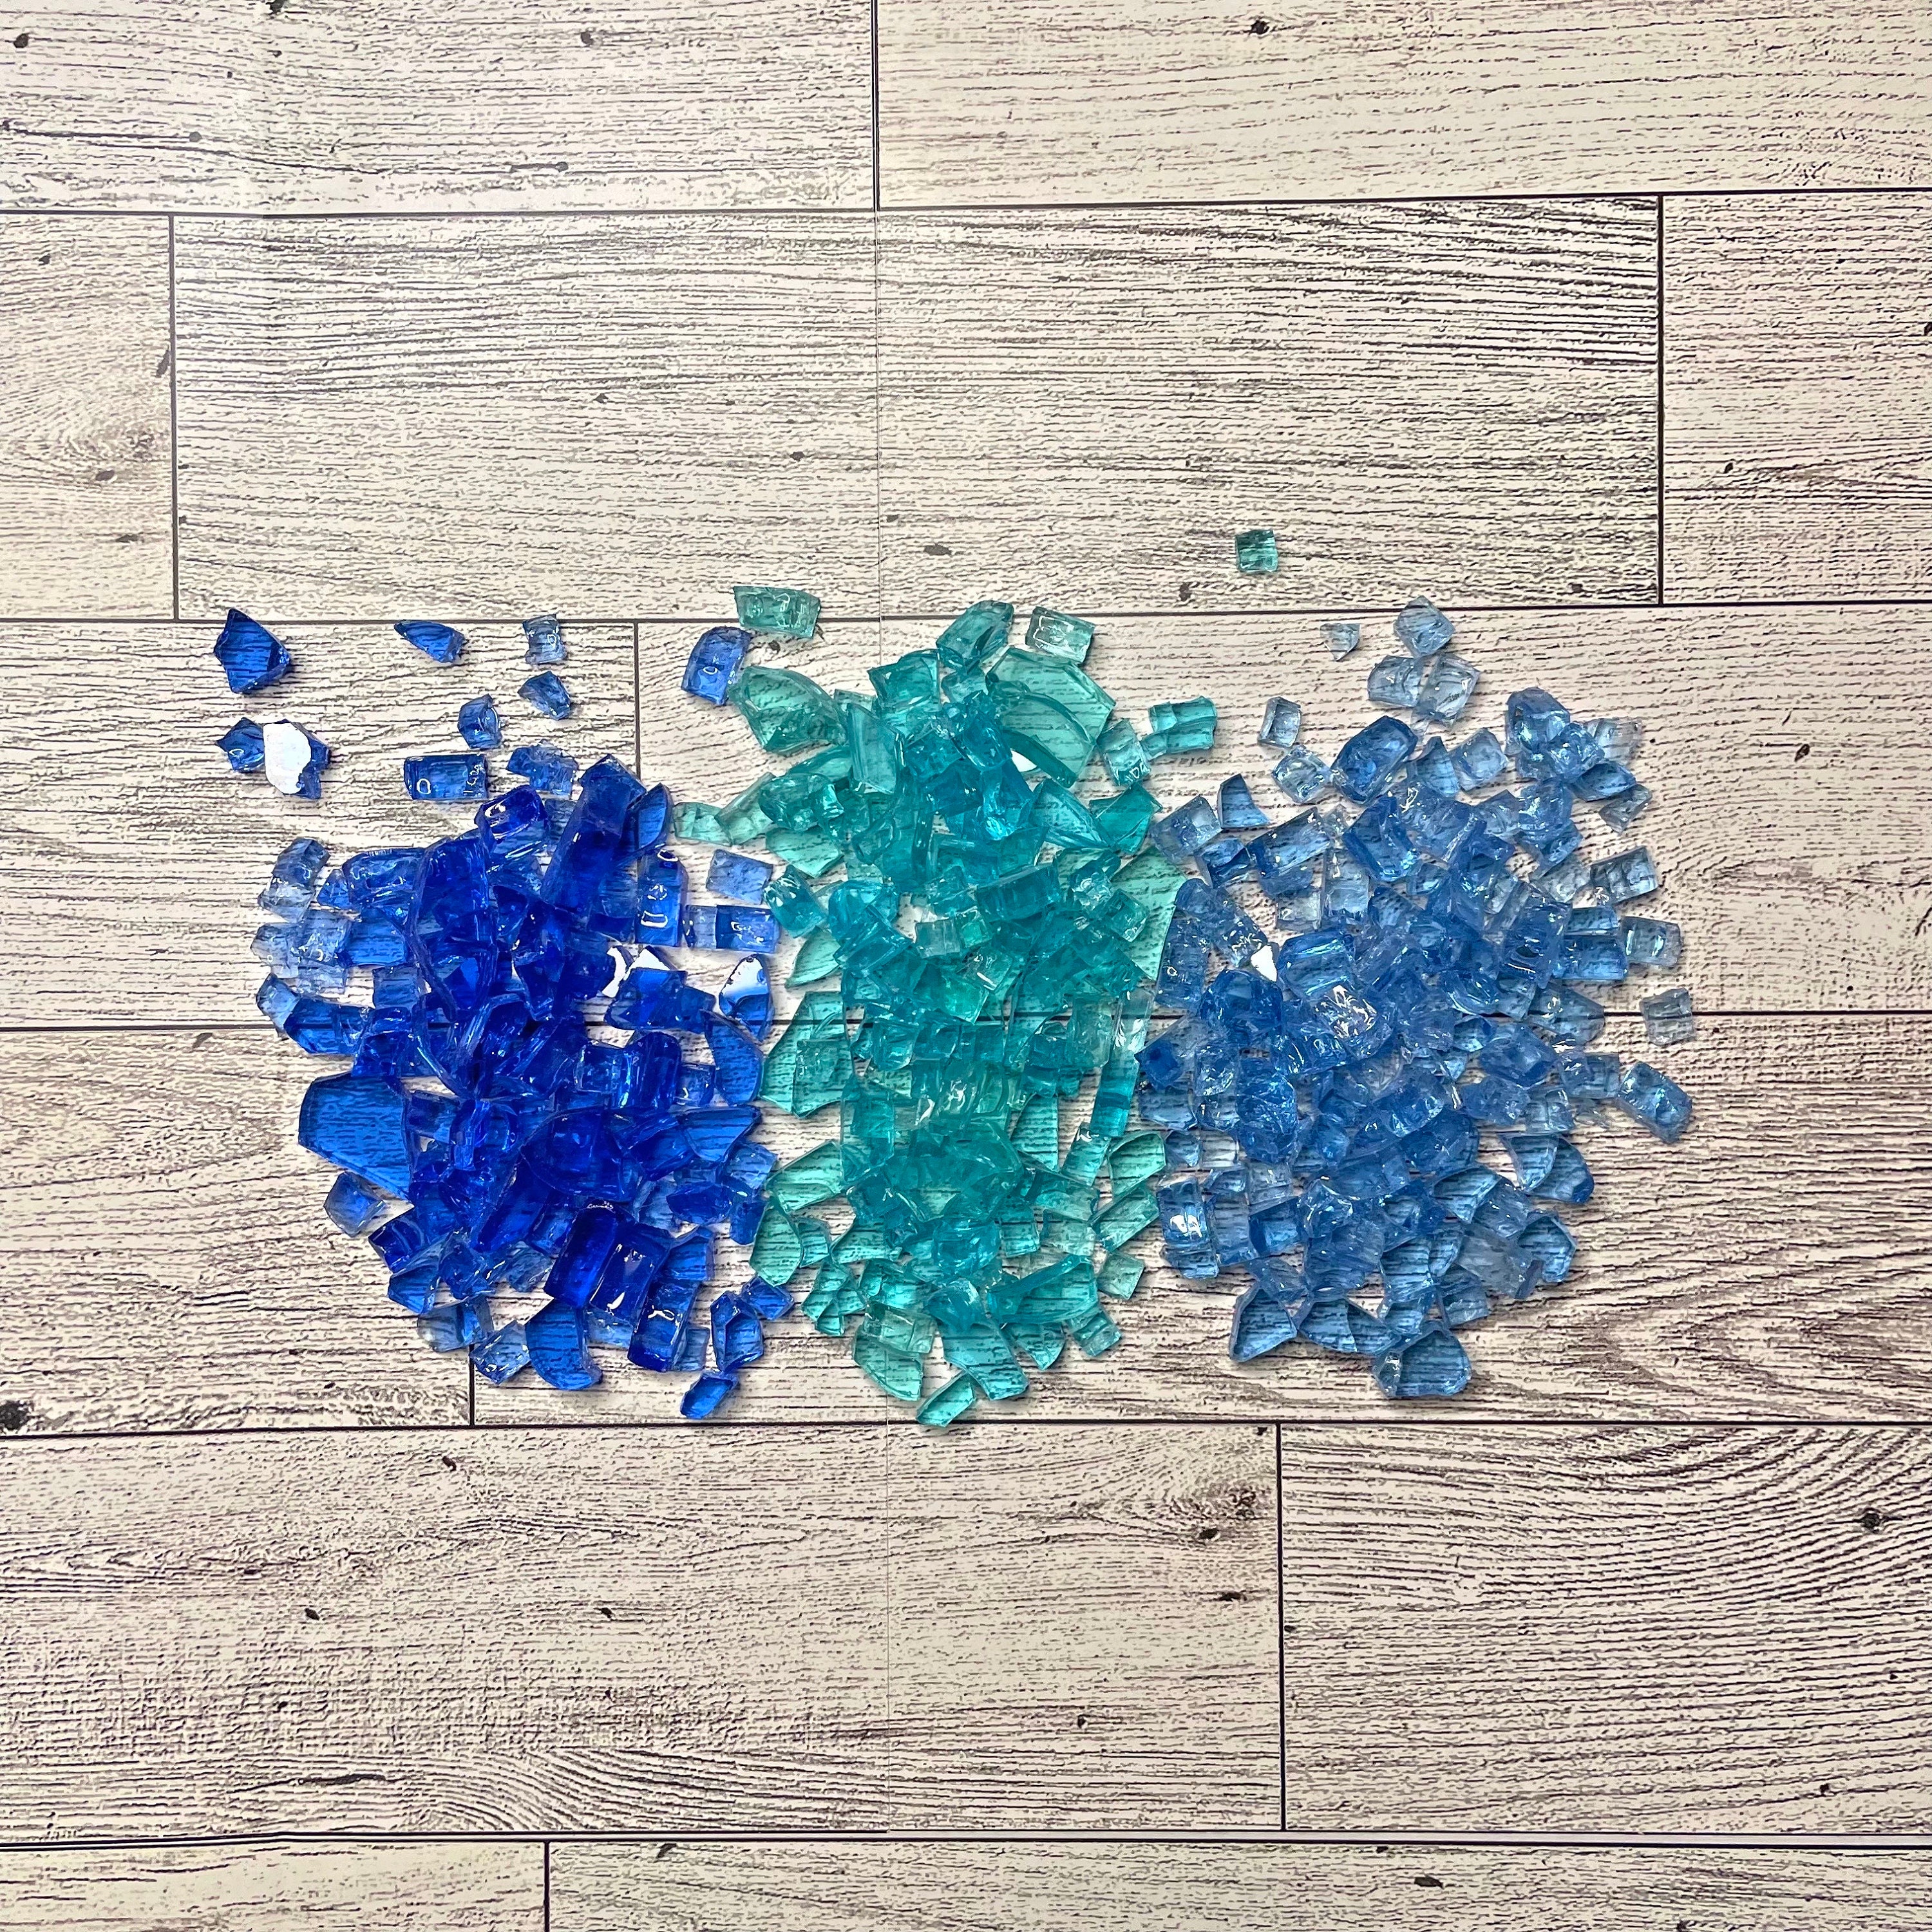 Crushed Glass for Resin Art, Broken Glass Pieces for Crafts Vase Filler  Home Dec